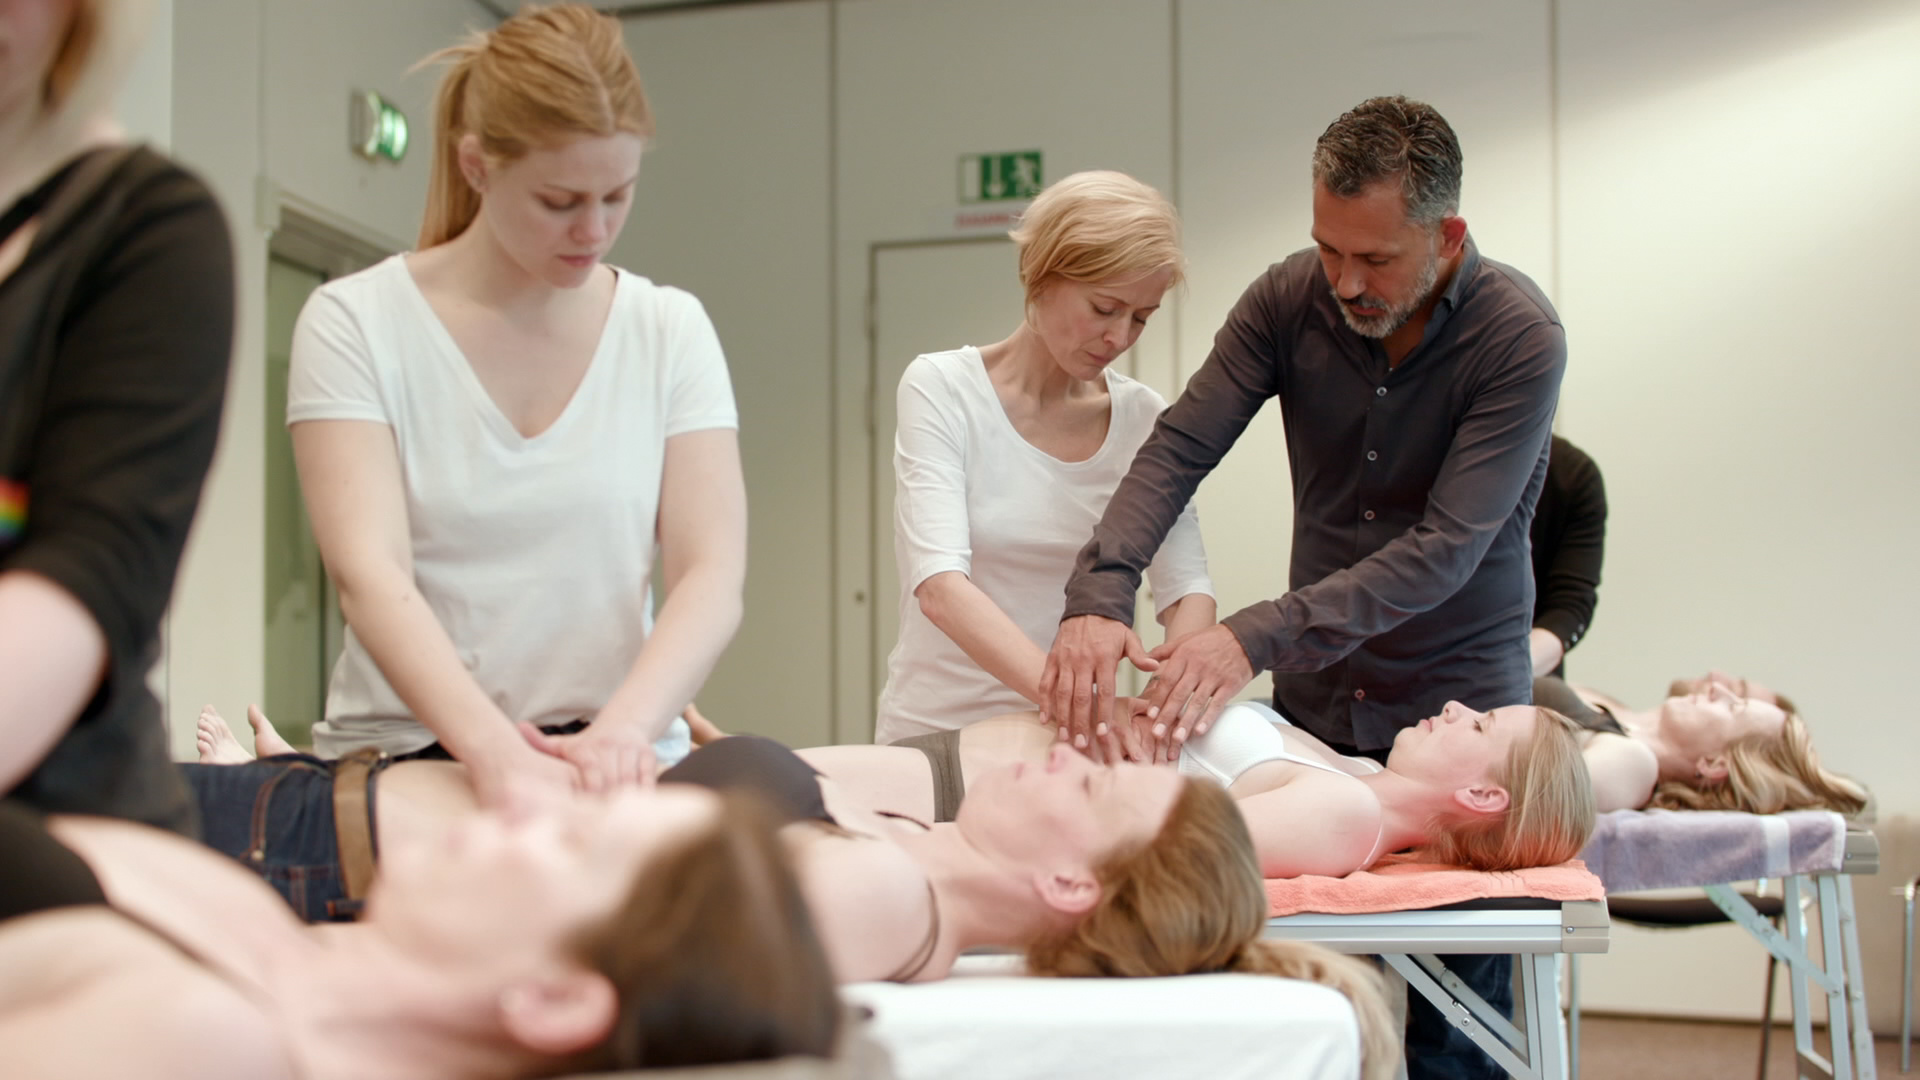 Angehende Osteopathen lernen verschiedene Handgriffe am menschlichen Körper (c) ZDF und Nils Vogt 